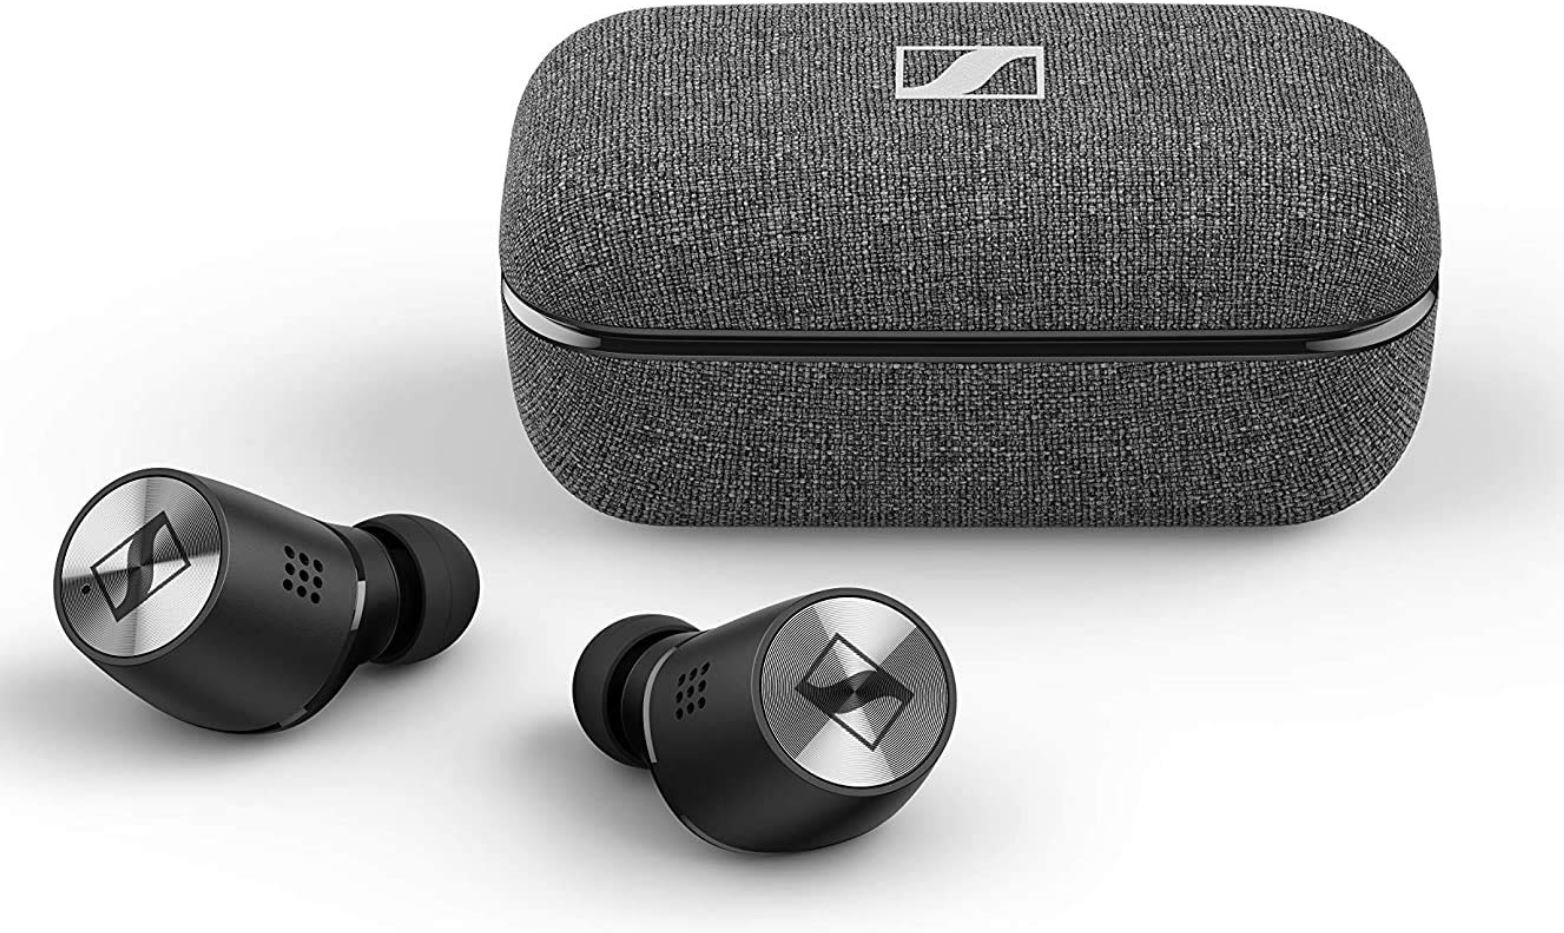 Sennheiser-Momentum-True-Wireless-2 Kopfhörer auswählen - Worauf sollten Sie achten?